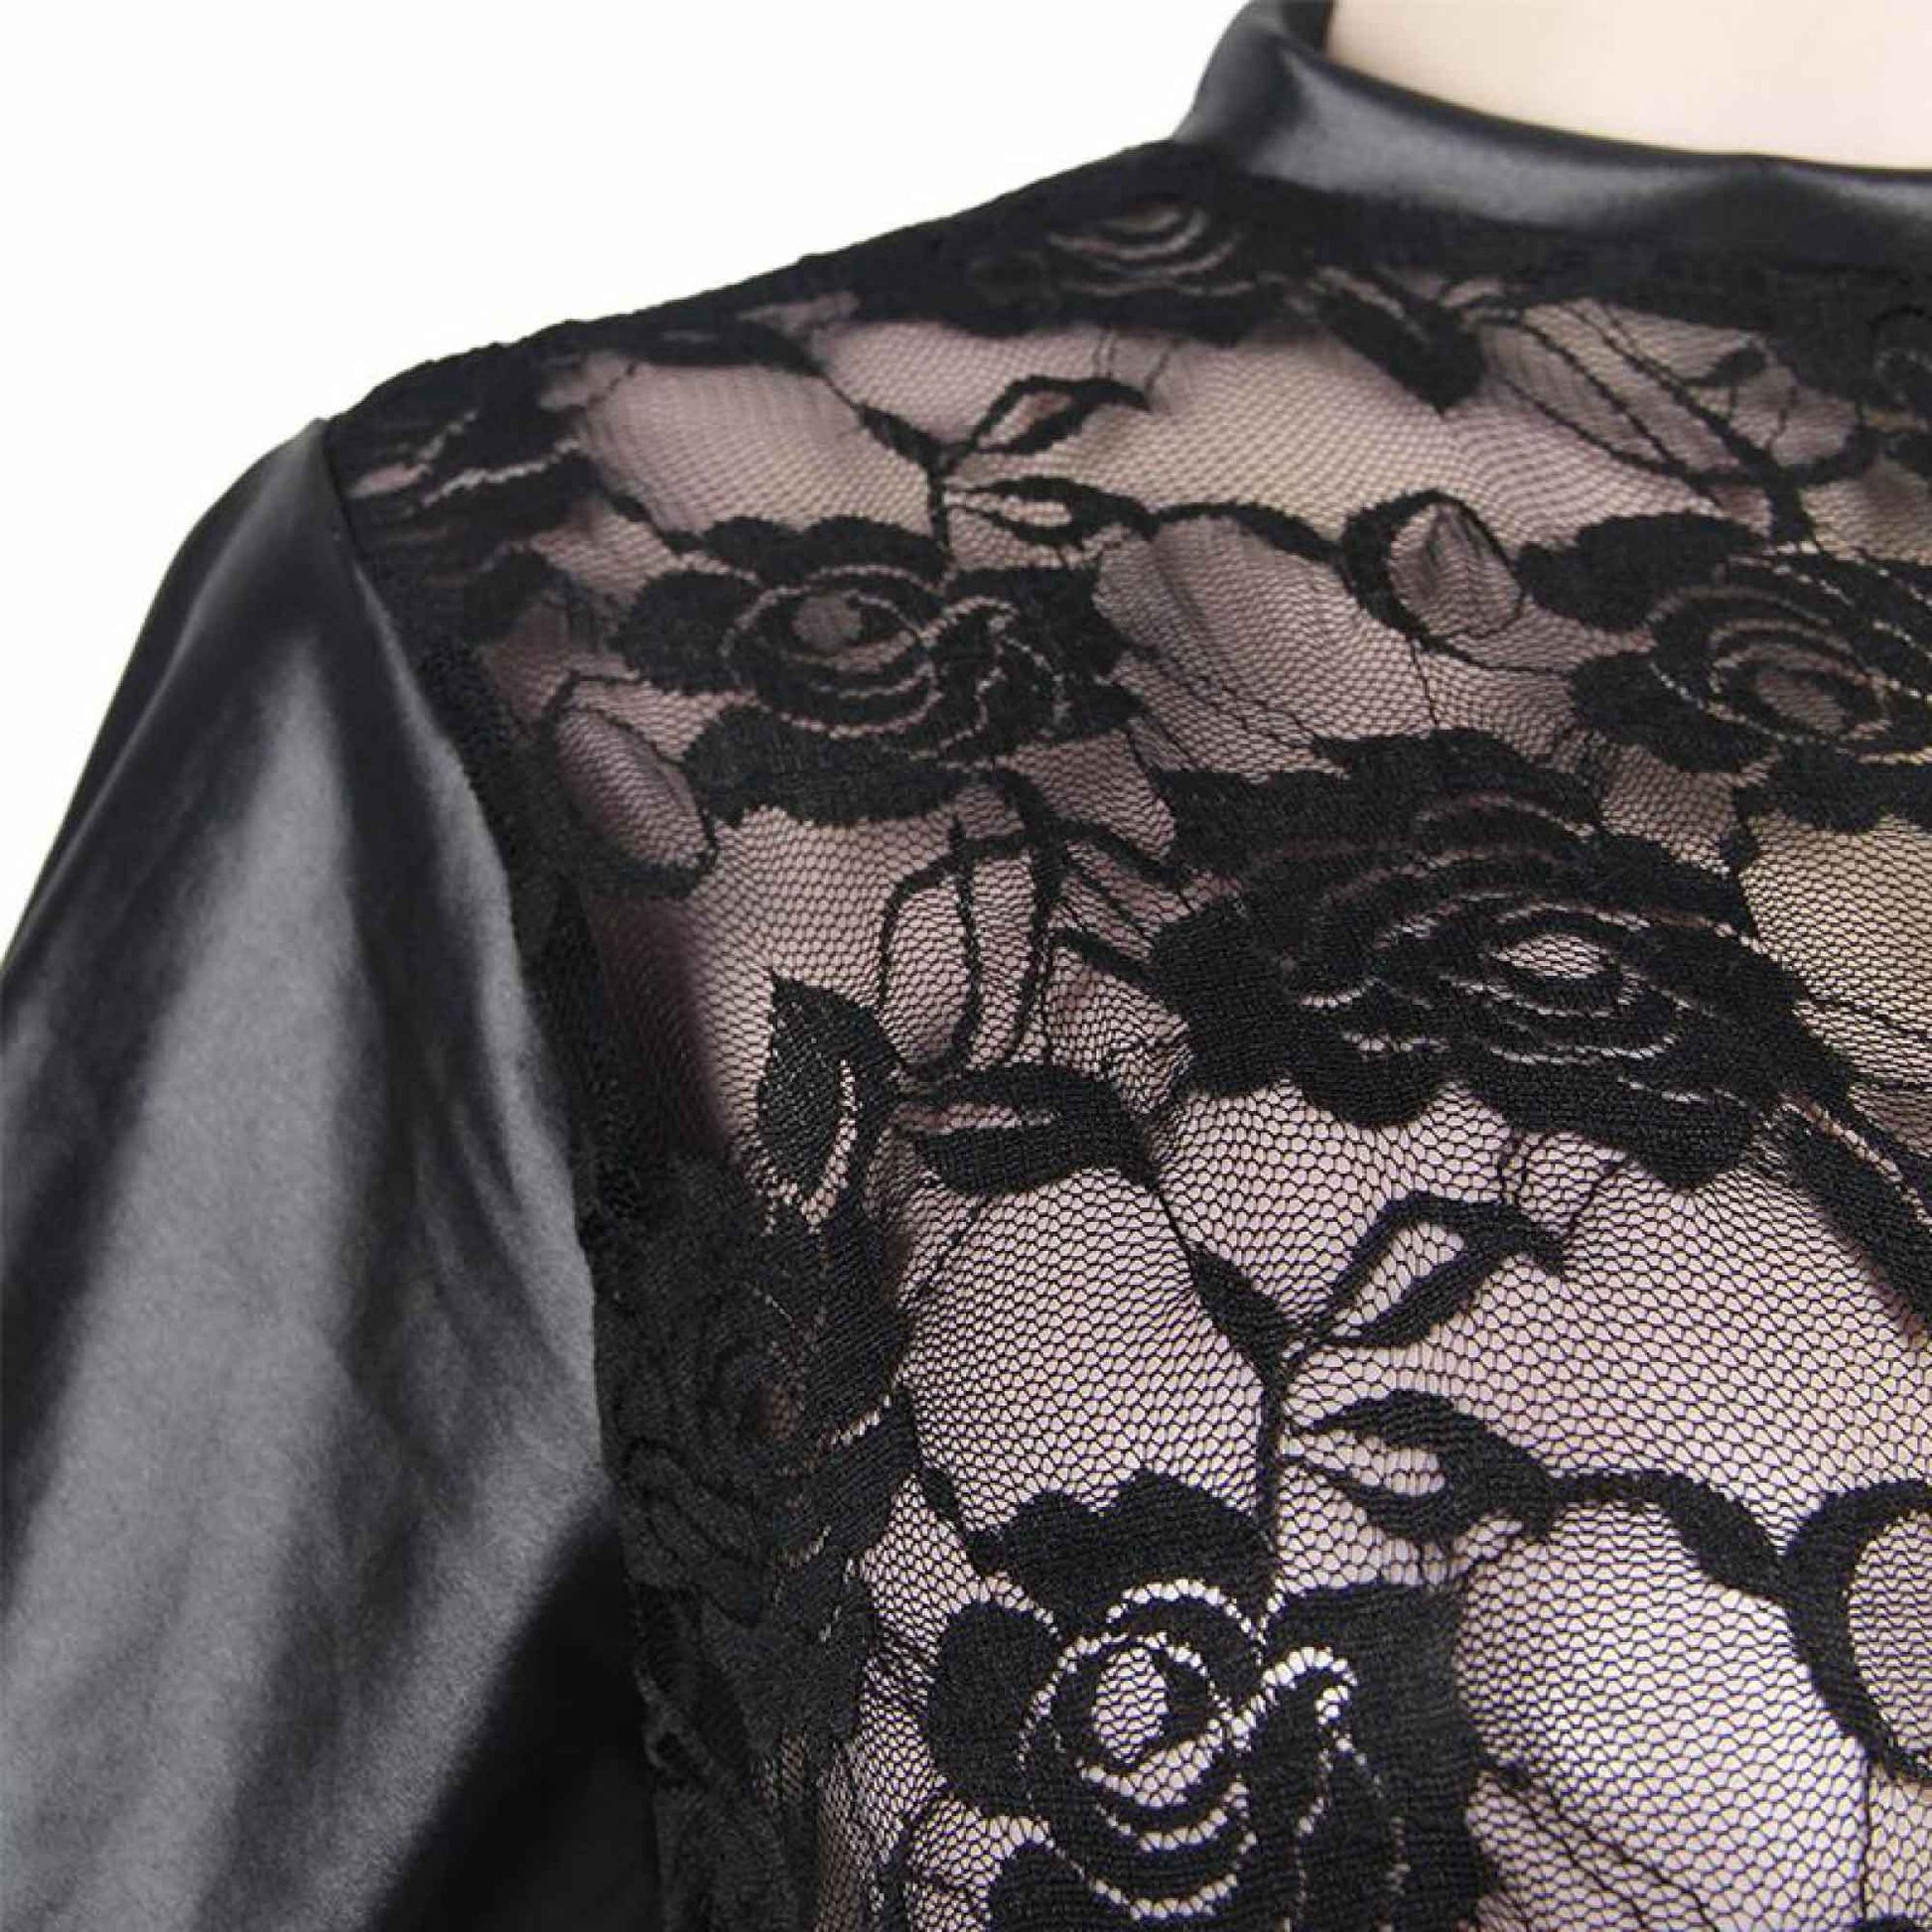 Black Short Sleeve Lace Lingerie Bodysuit Shorts Playsuit Faux Leather Underwear